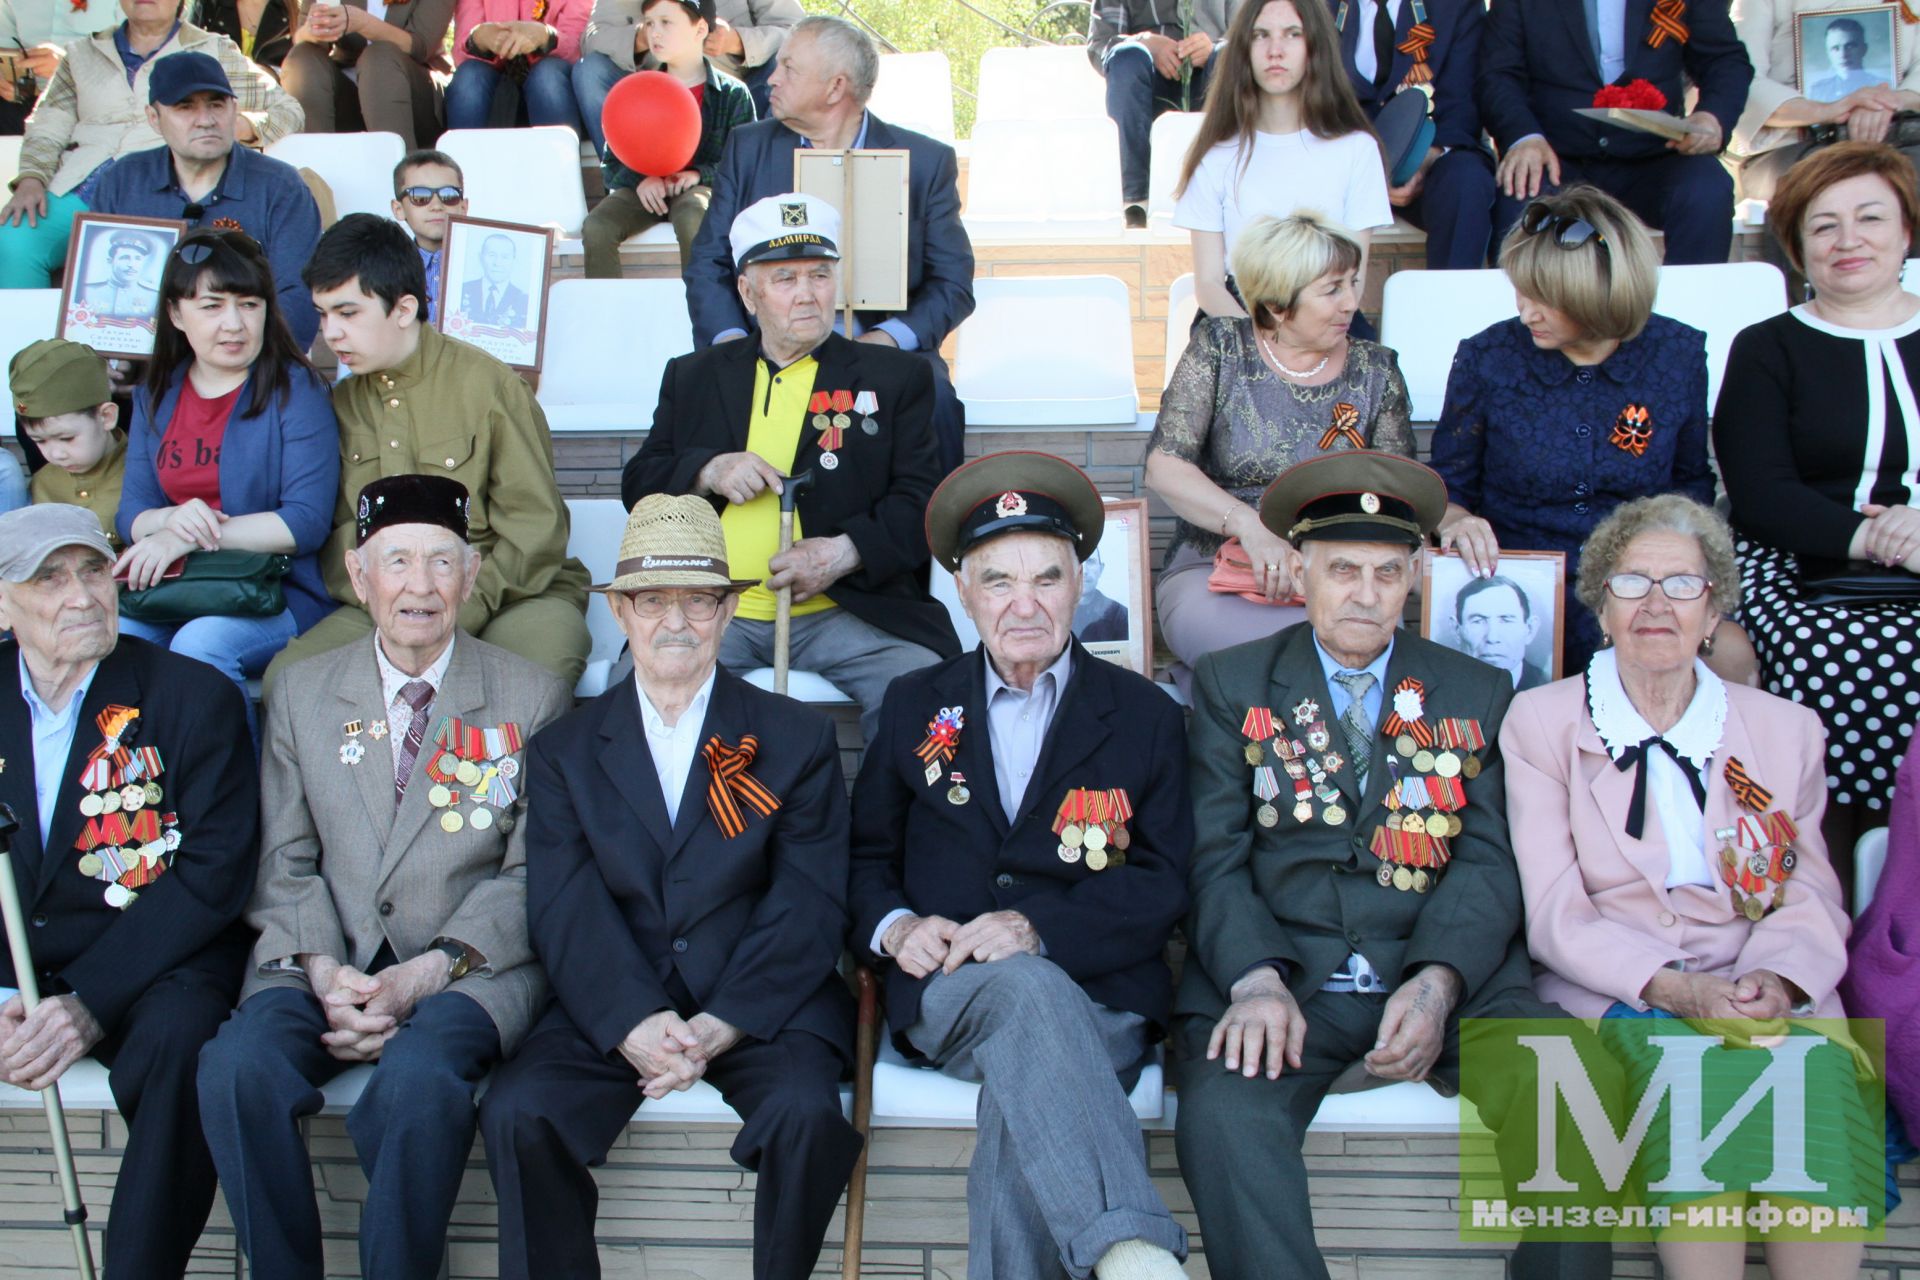 Айдар Салахов: Желаю нам так же встретить и 75-ю годовщину Великой Победы